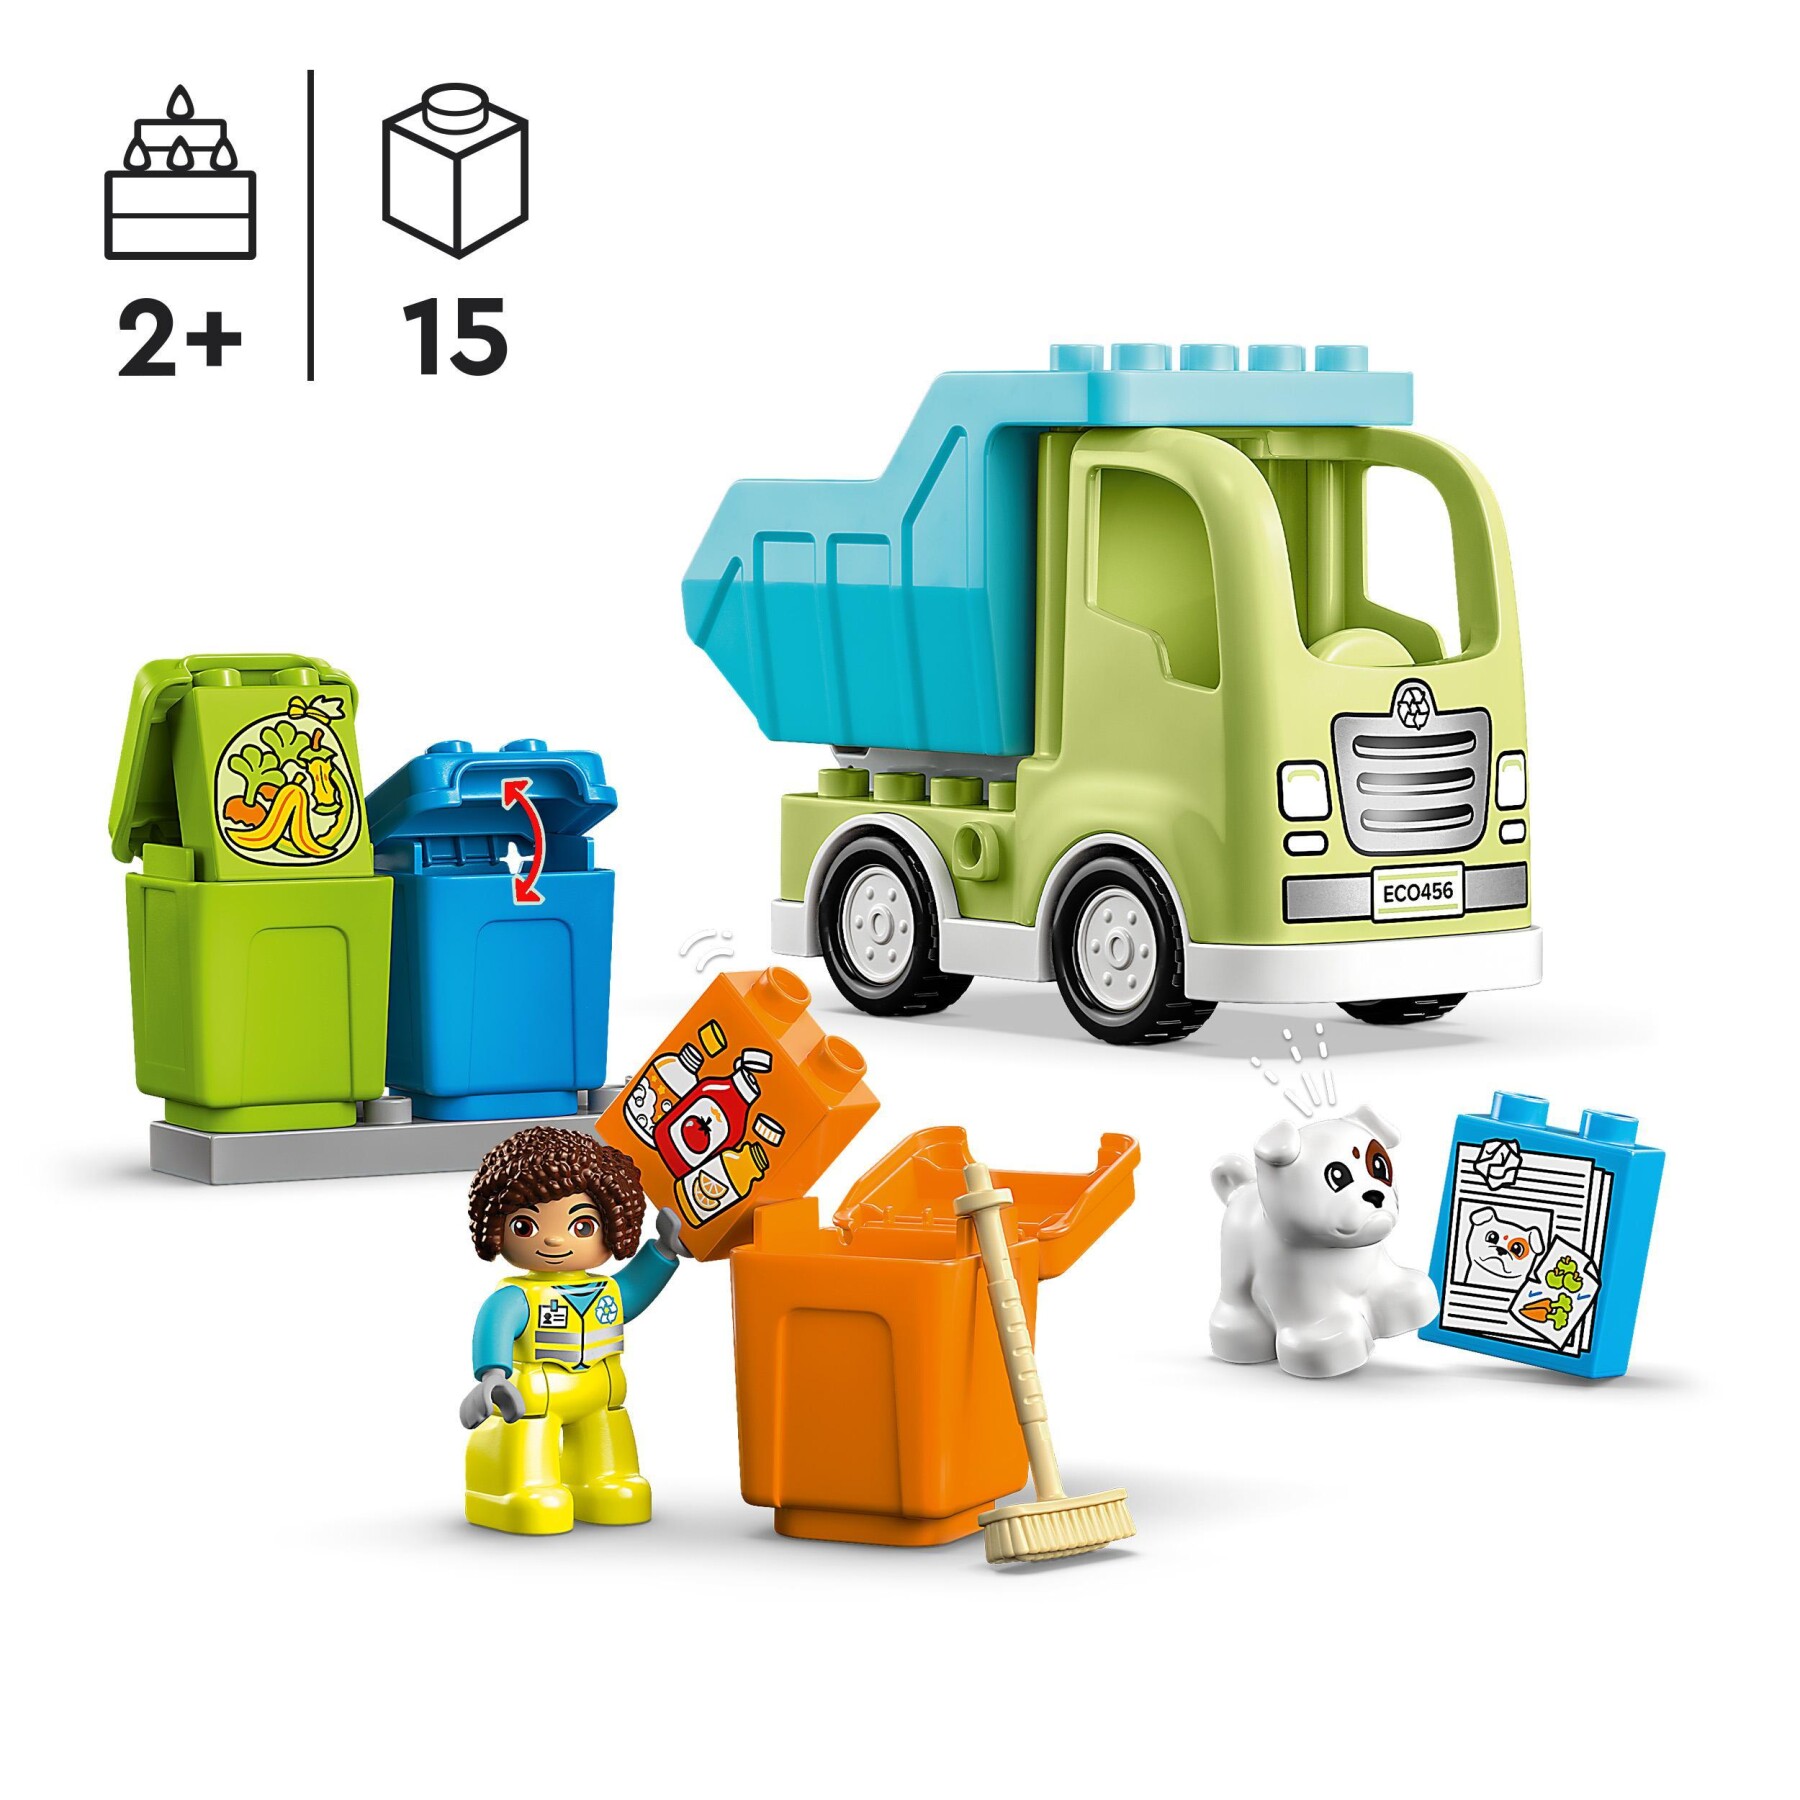 Lego duplo 10987 camion riciclaggio rifiuti, camion spazzatura giocattolo, gioco educativo per bambini, raccolta differenziata - LEGO DUPLO